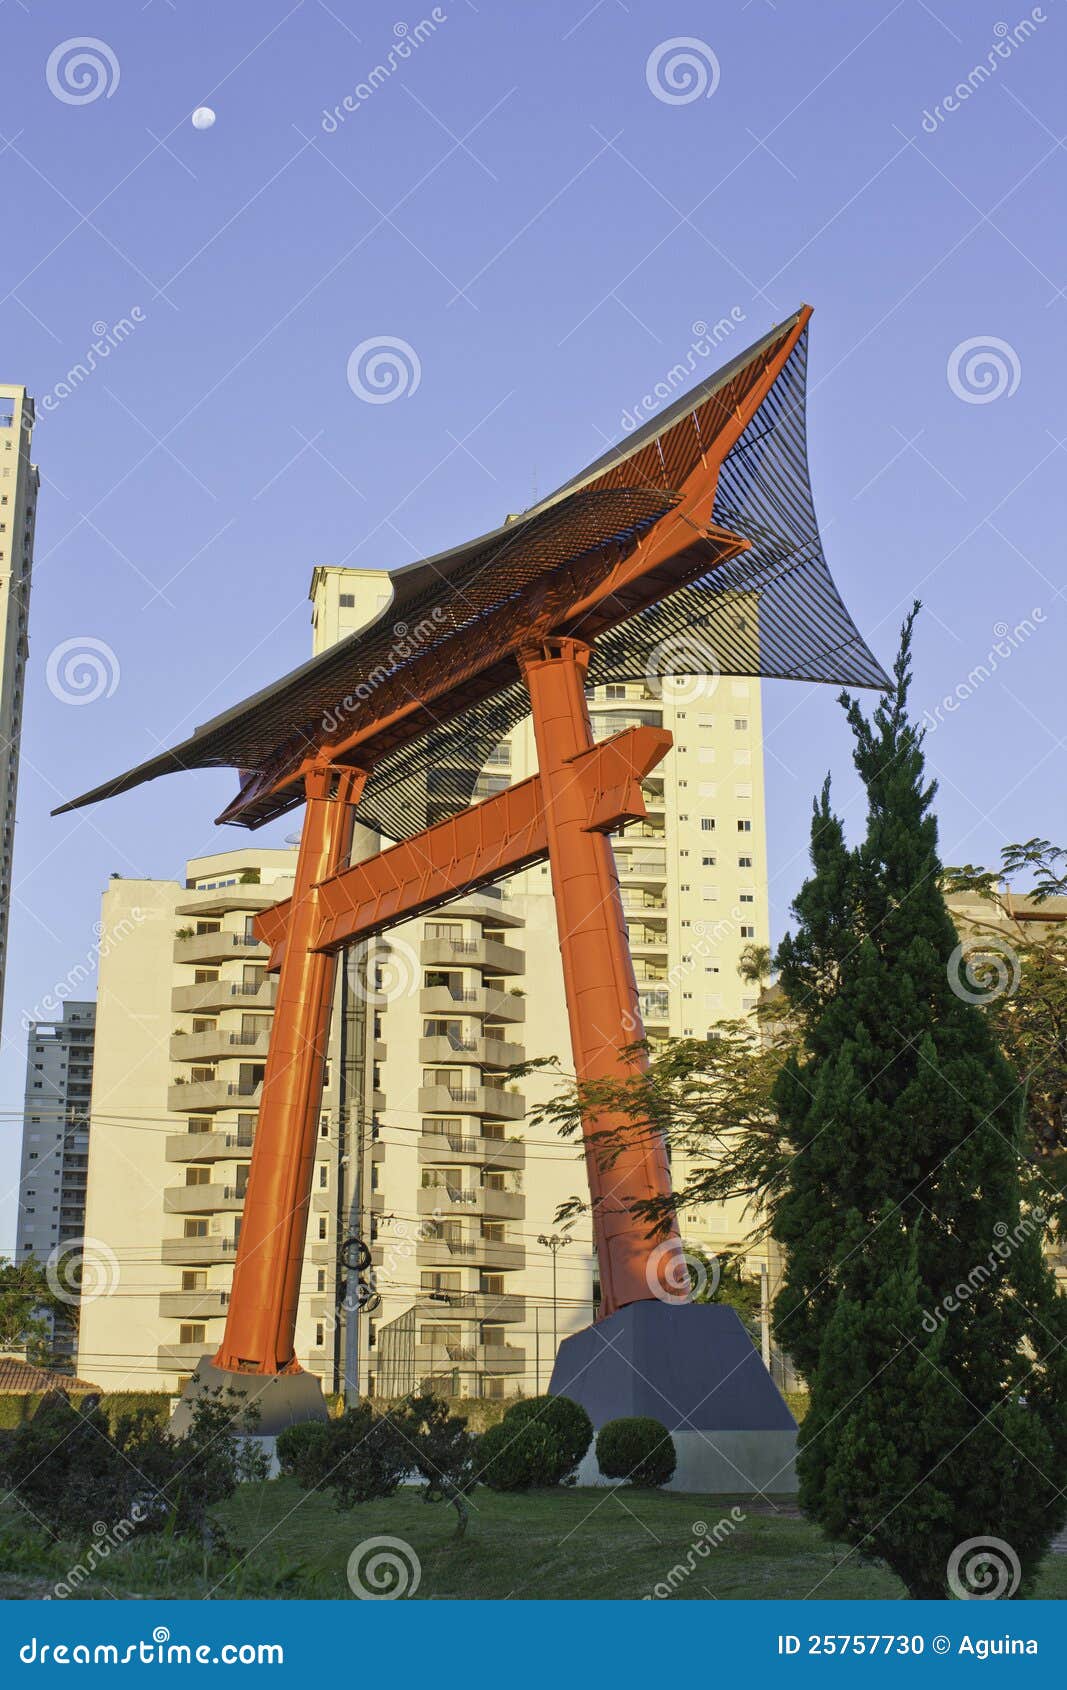 monument in sao jose dos campos - brazil